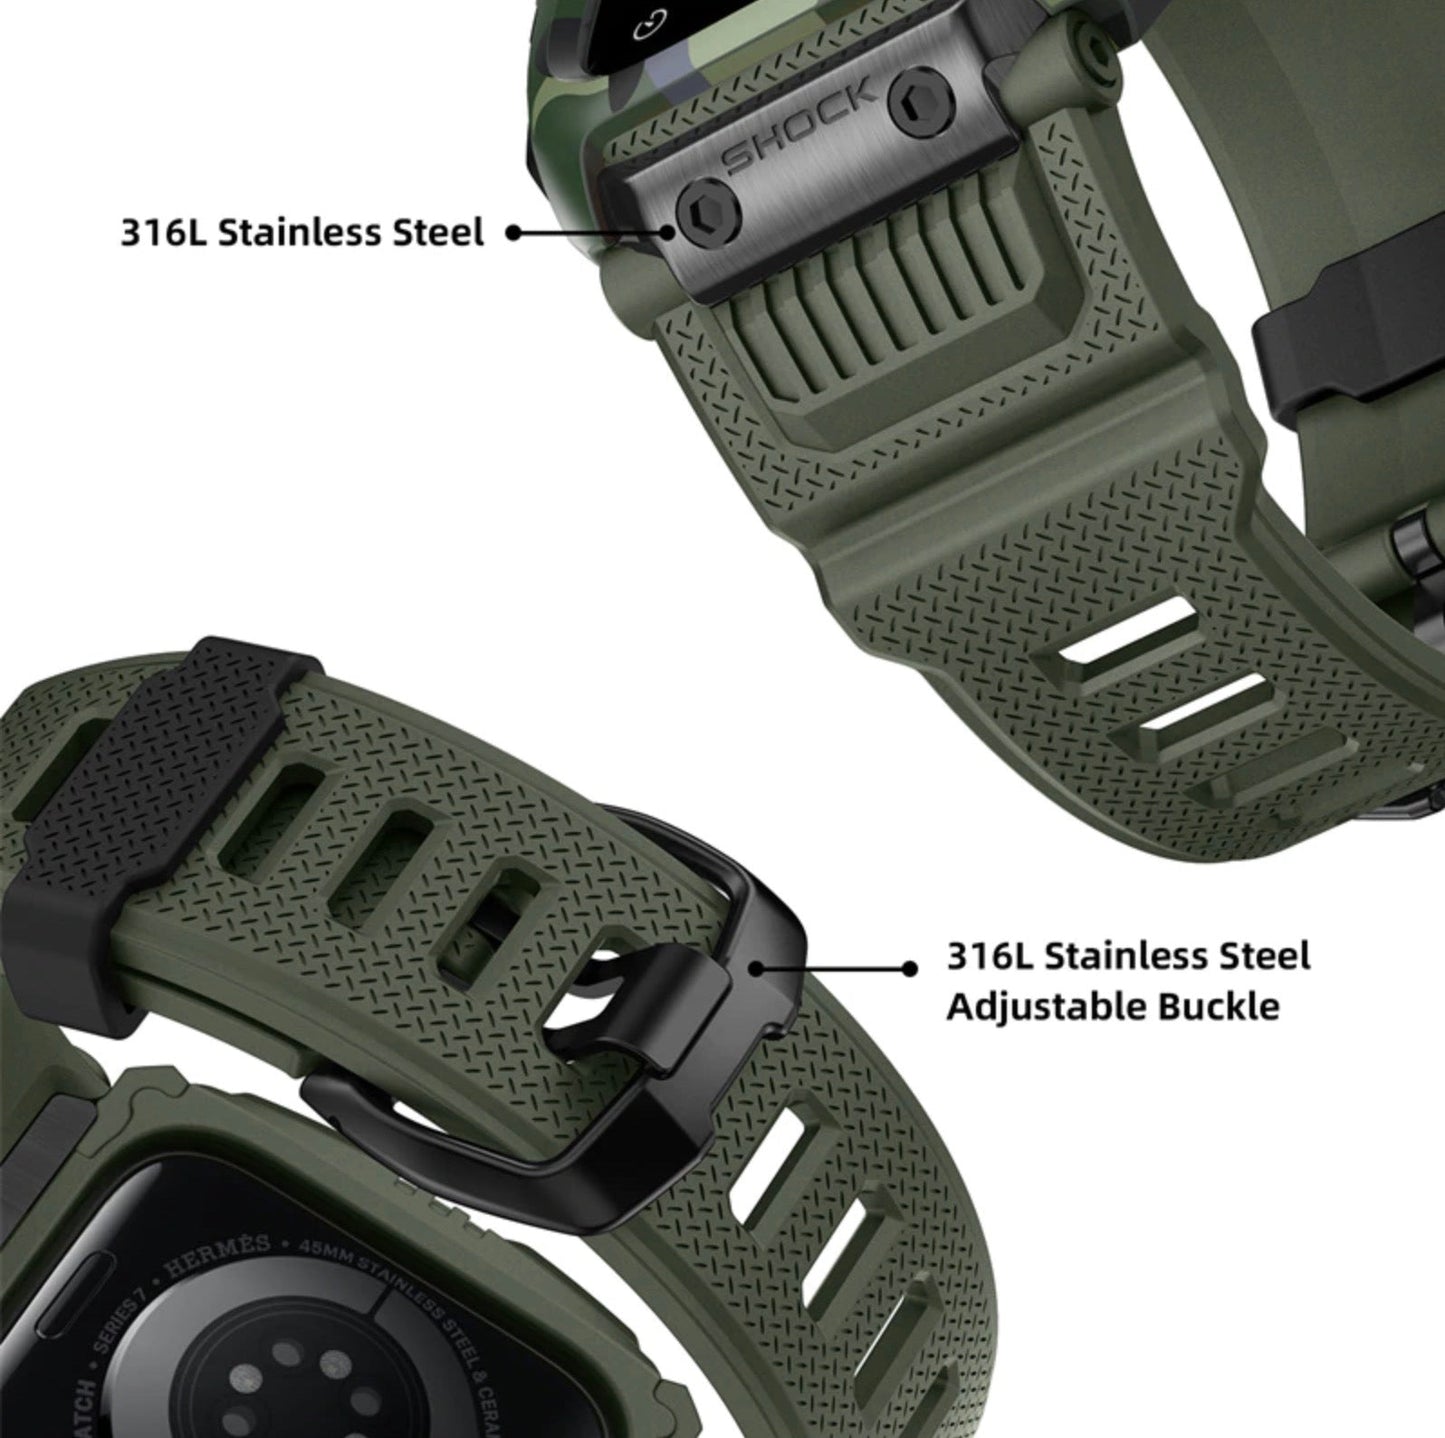 Apple Watch 45mm/44mm/42mm用耐衝撃ケース一体型ラグドバンド